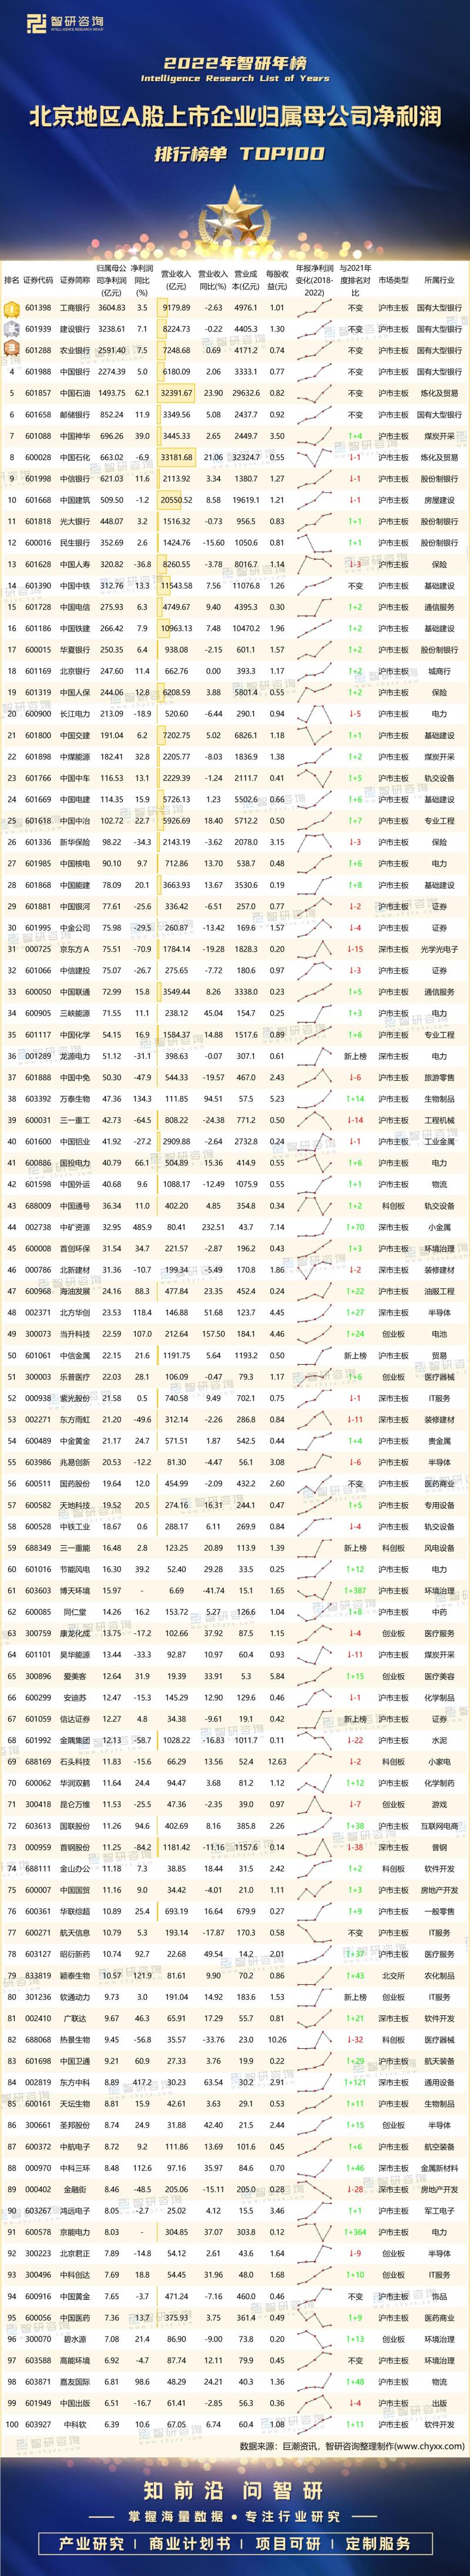 北京地区A股上市企业归属母公司净利润排行榜单TOP100